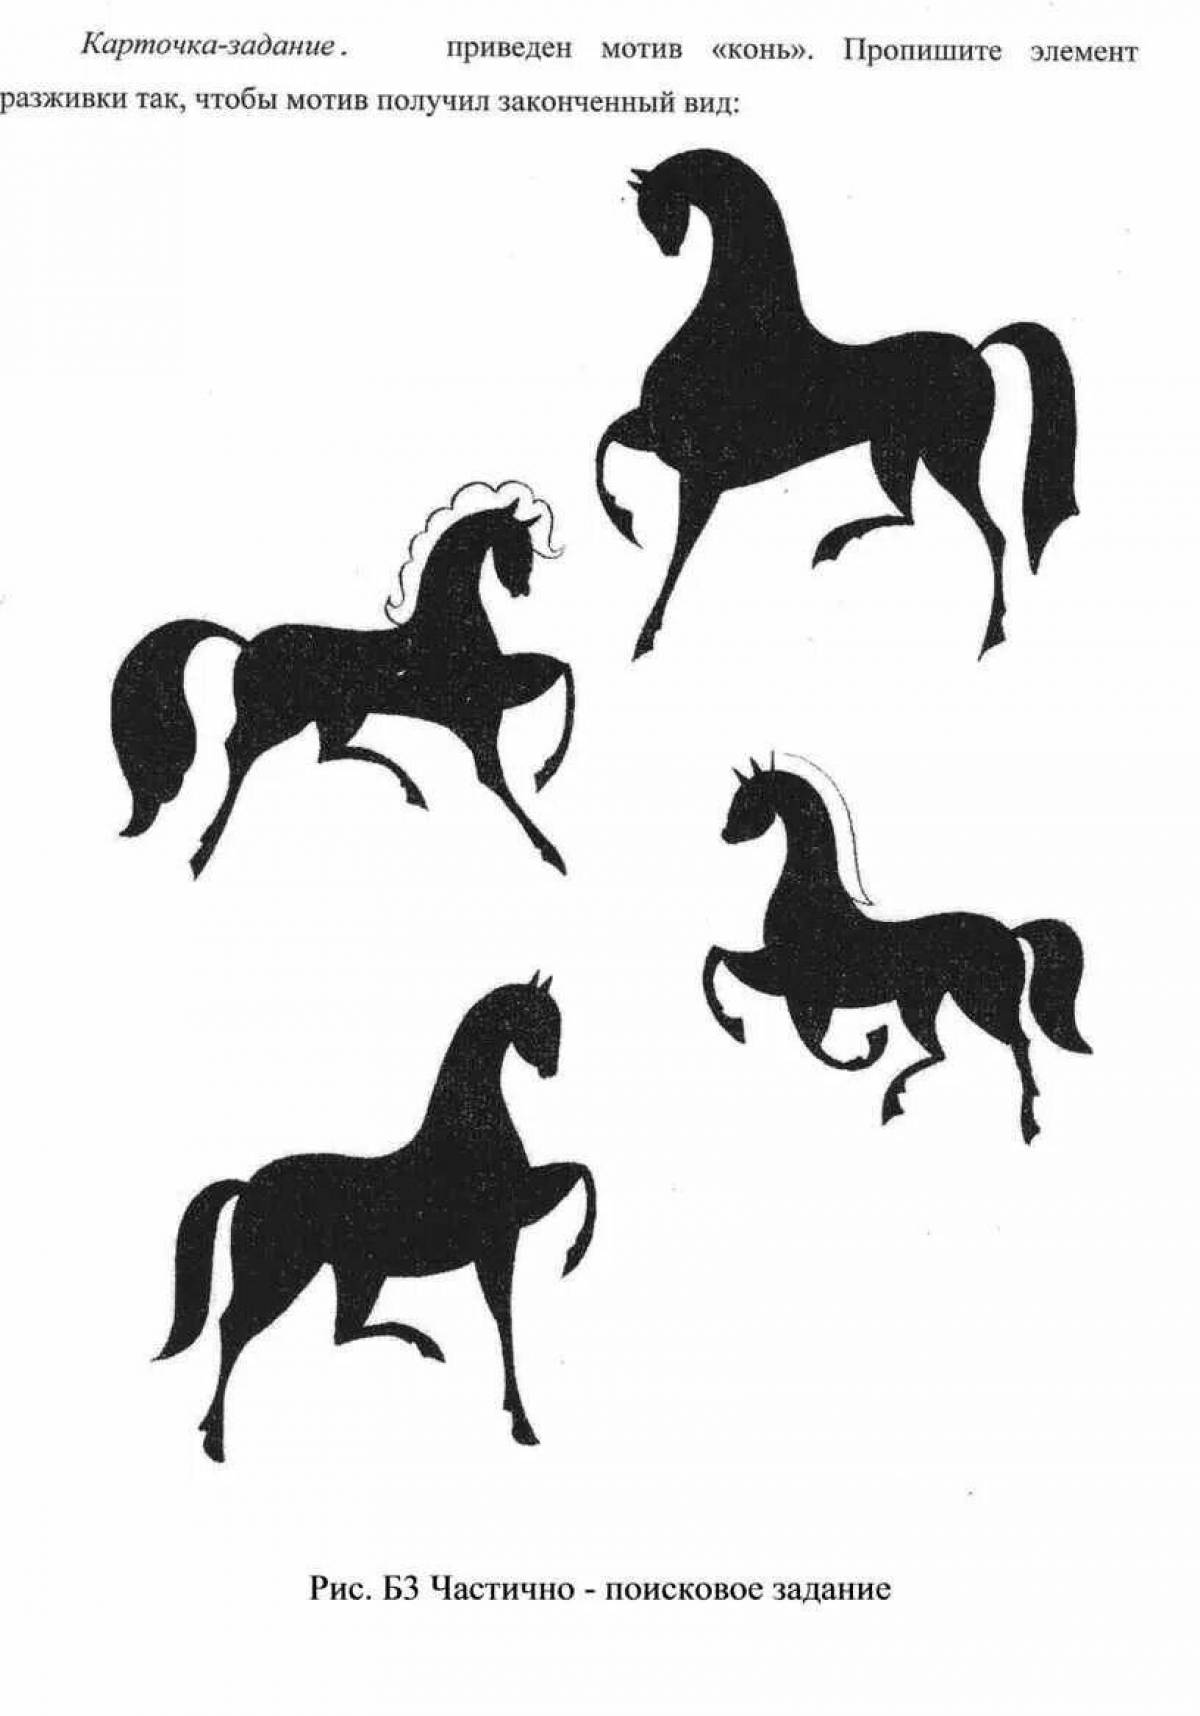 Shining horses Gorodets painting for children